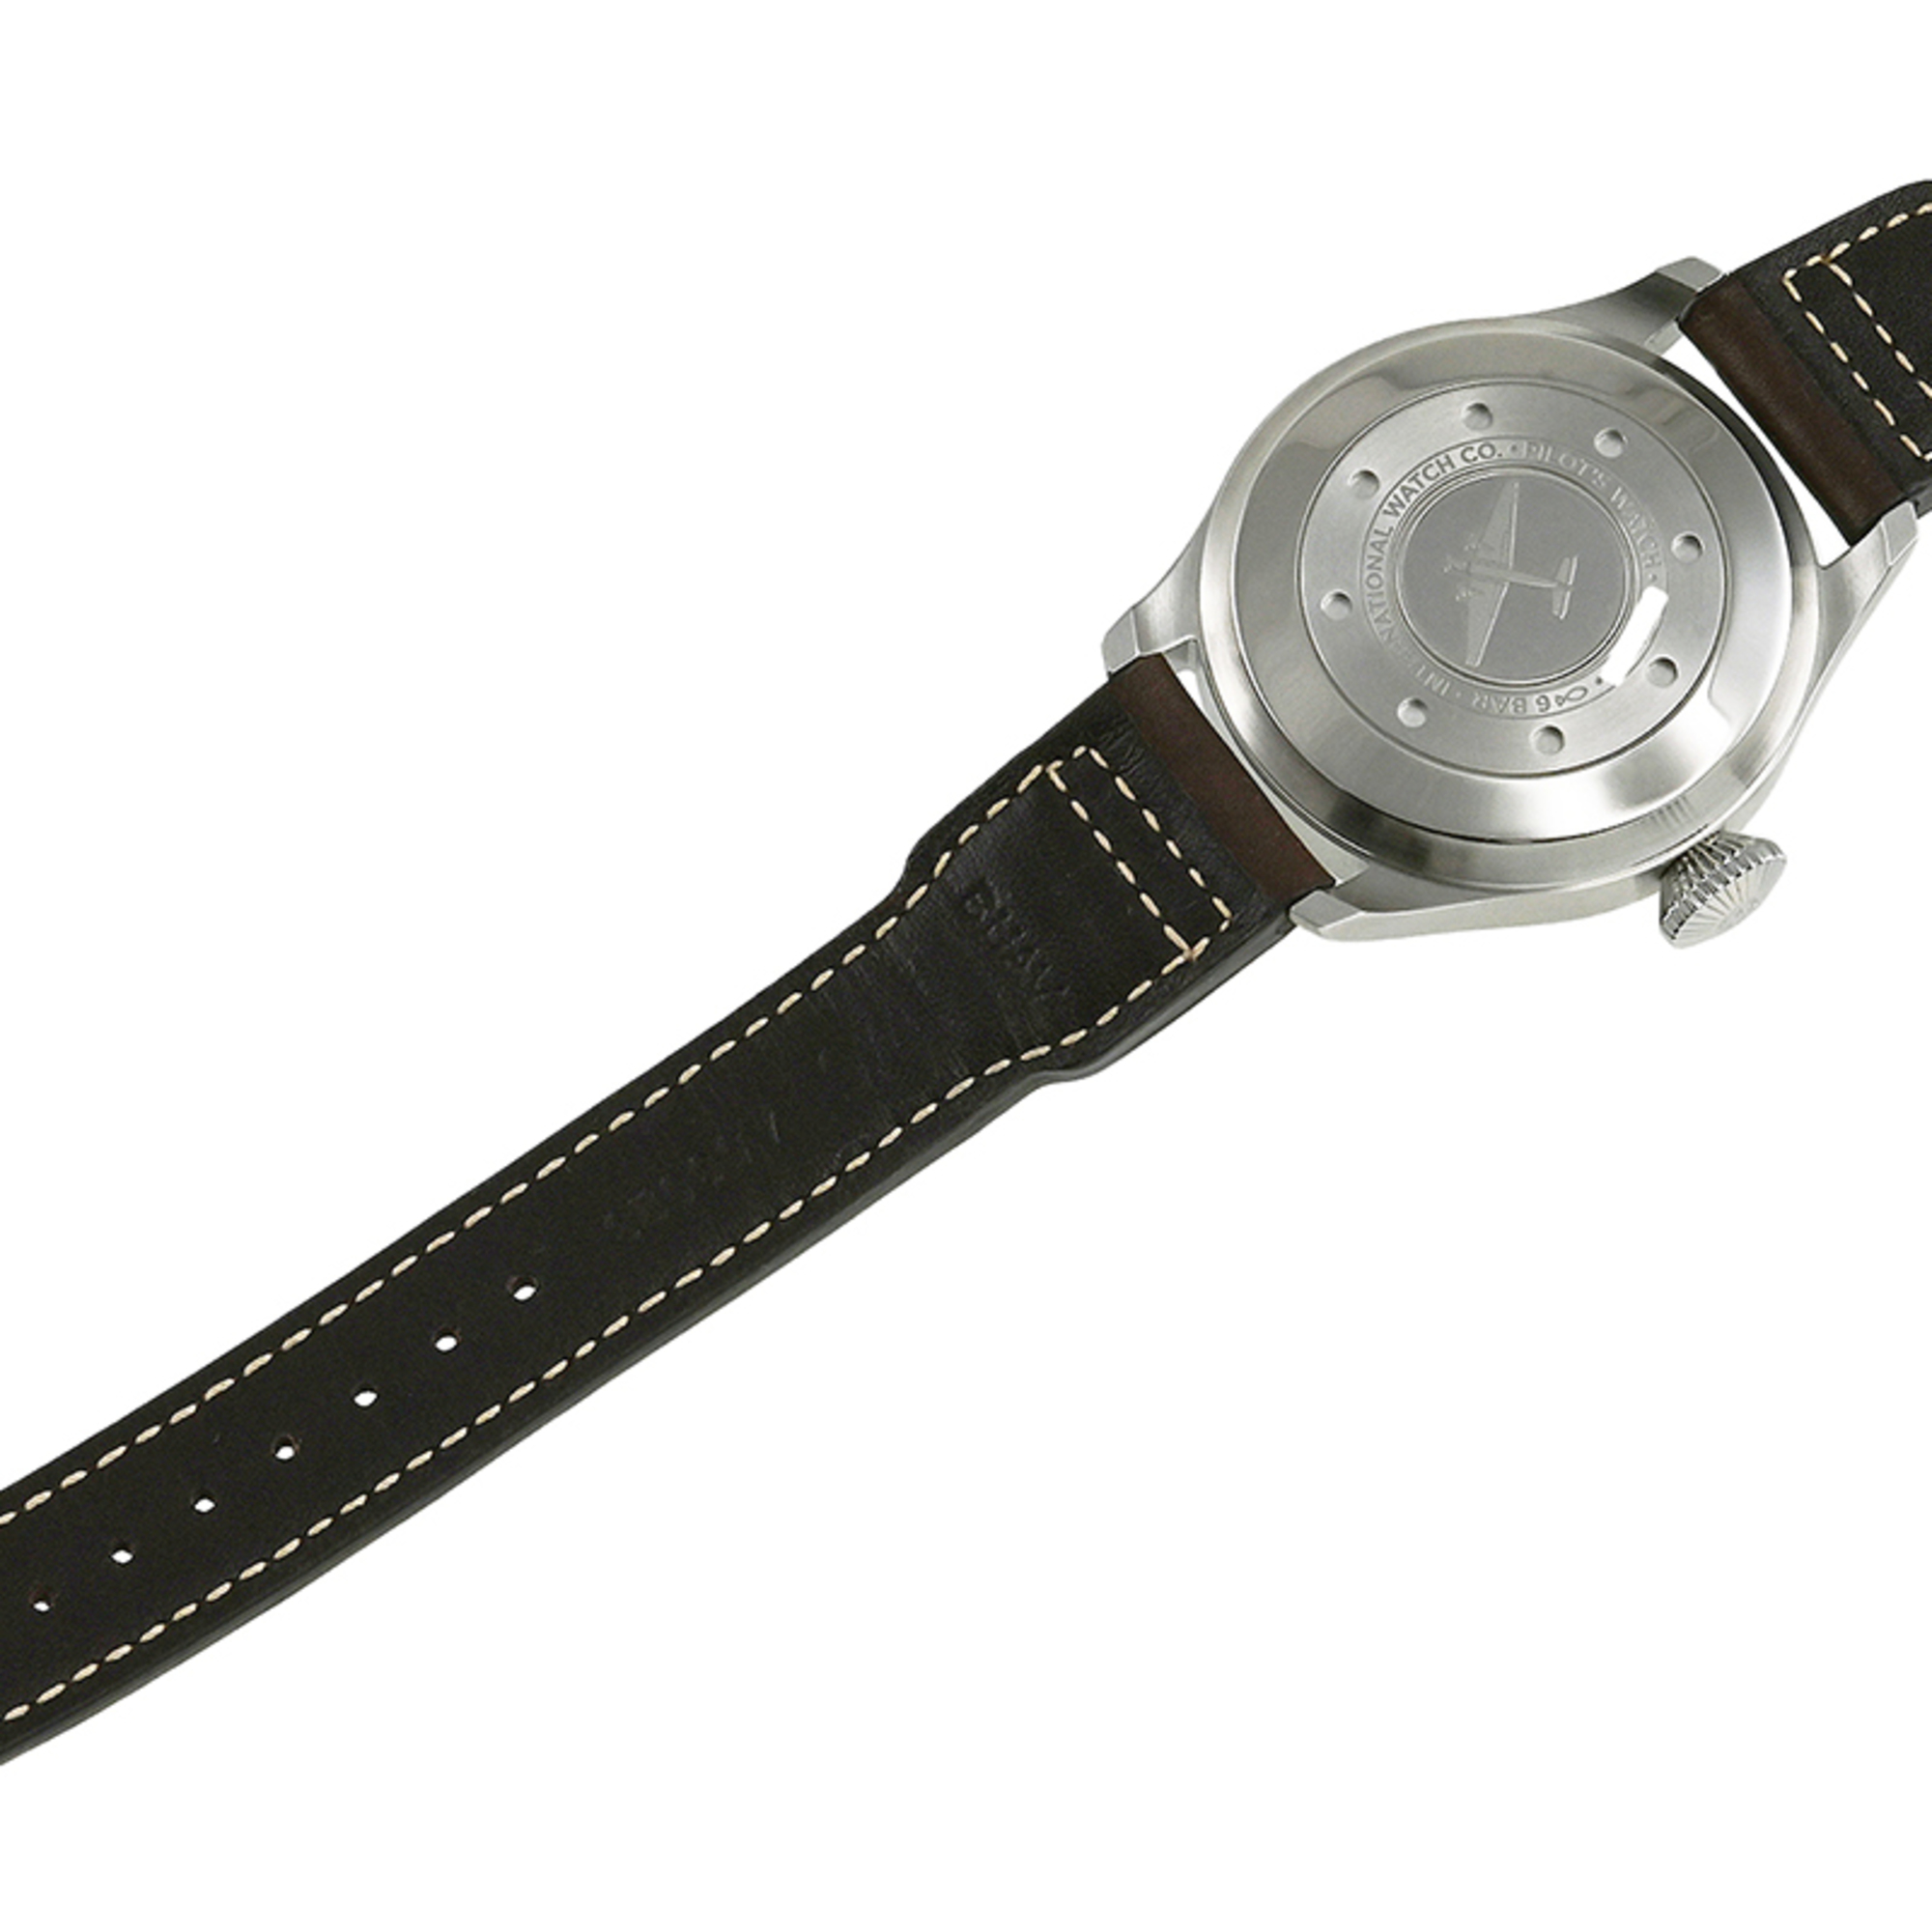 IWC Big Pilot Watch Wristwatch IW500912